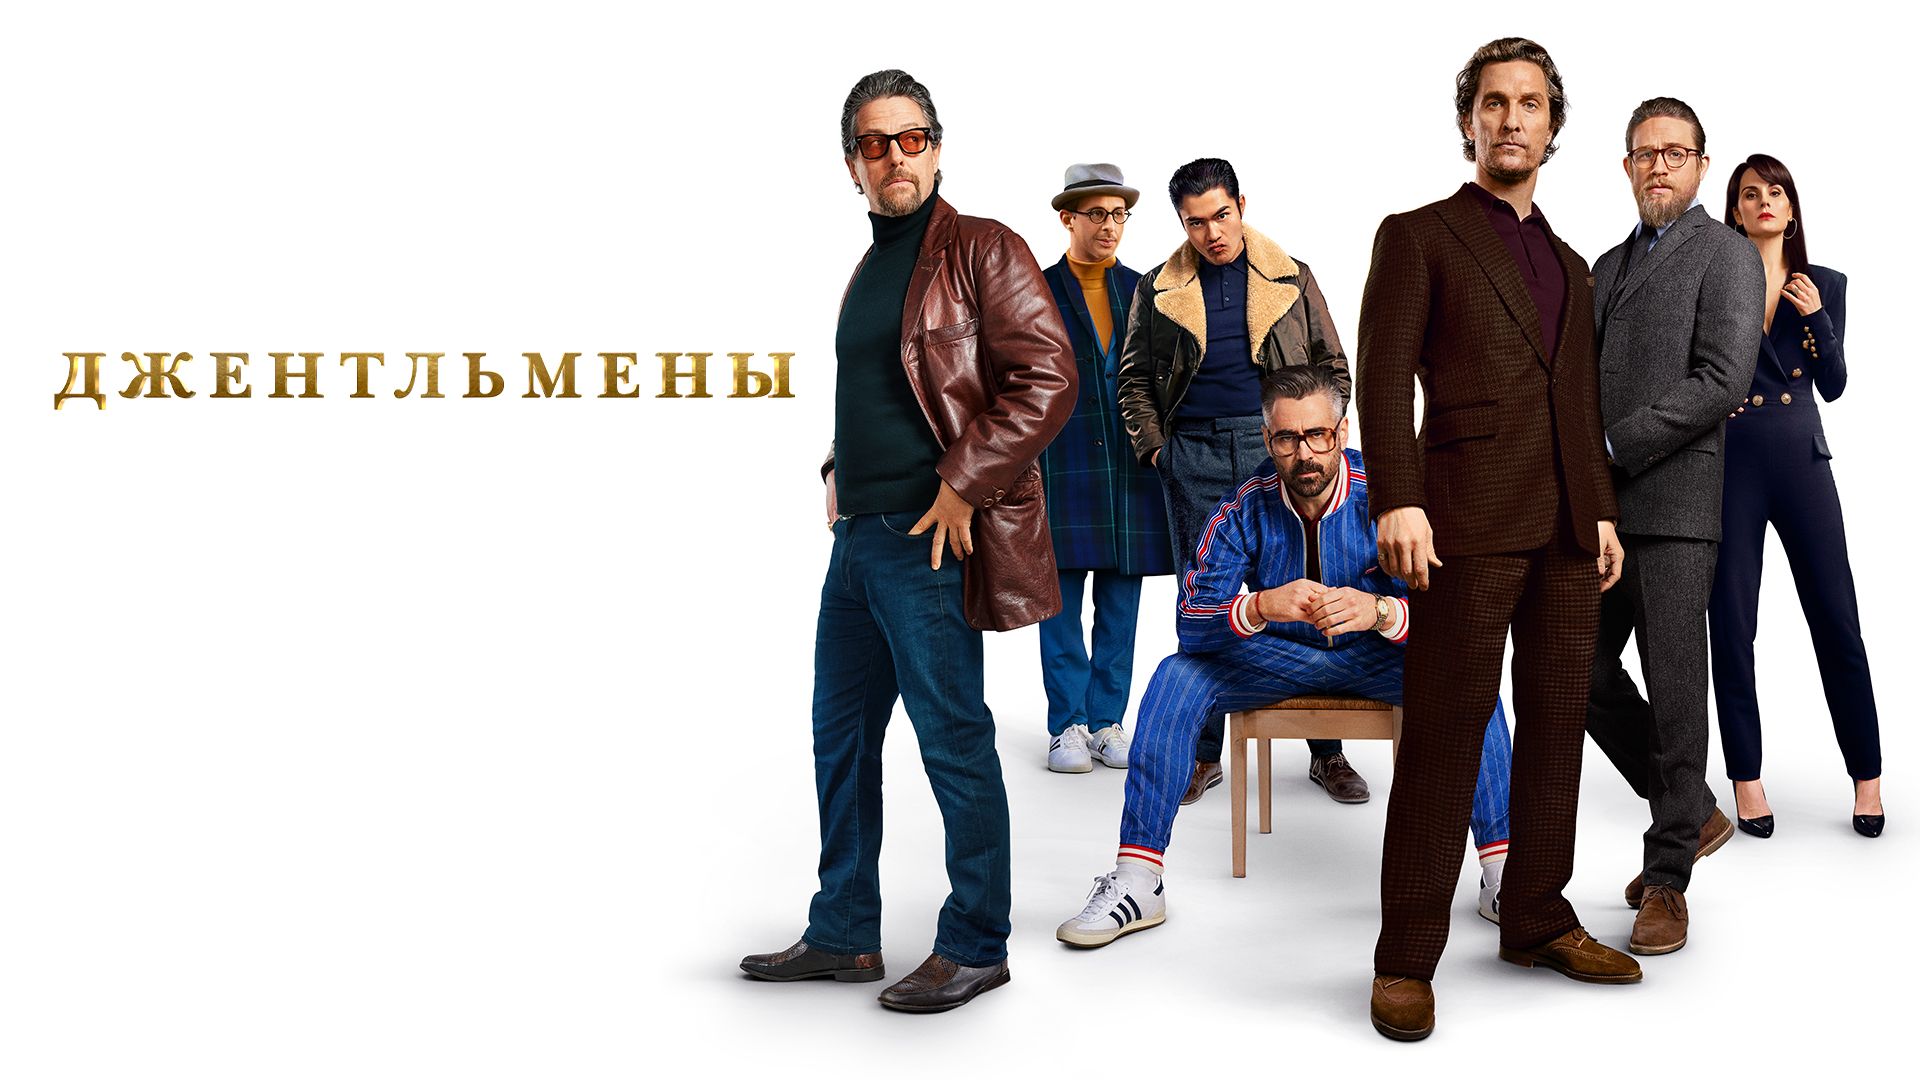 Сериал Джентльмены () смотреть онлайн бесплатно в хорошем качестве | xohu.ru